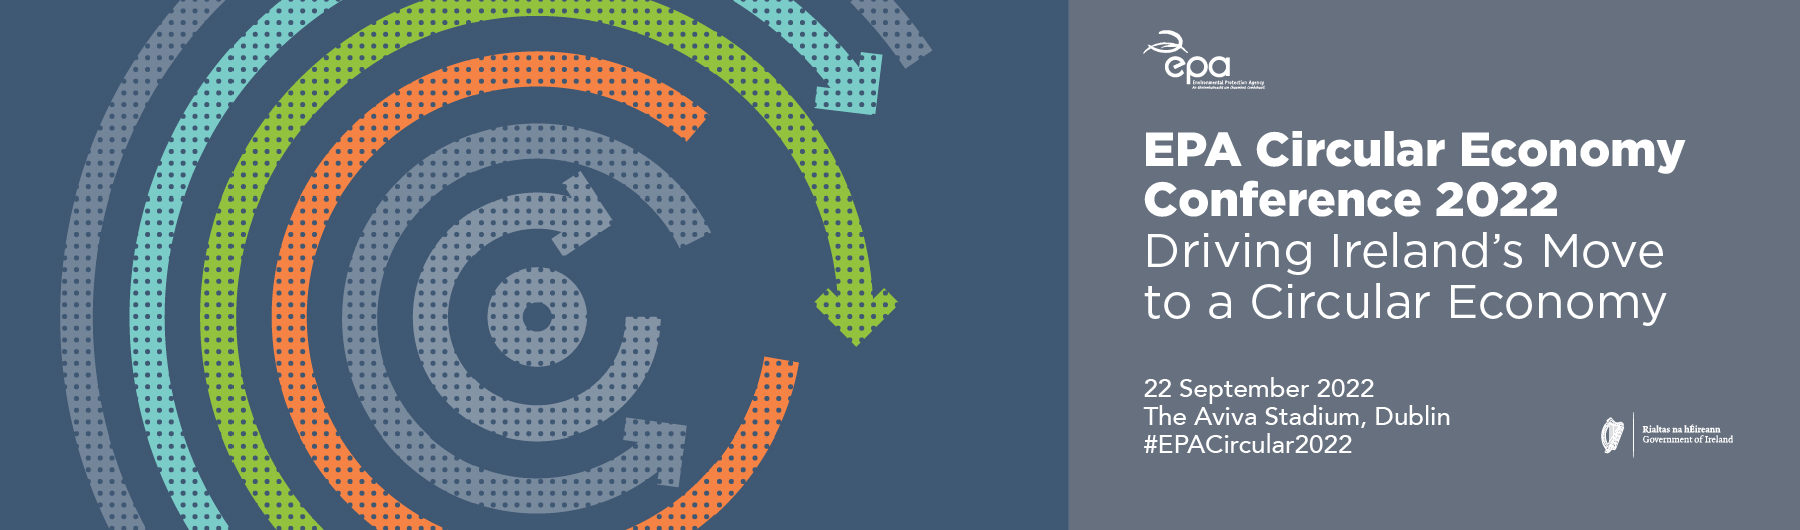 EPA Circular Economy Conference 2022 Come talk to CIRCULÉIRE!